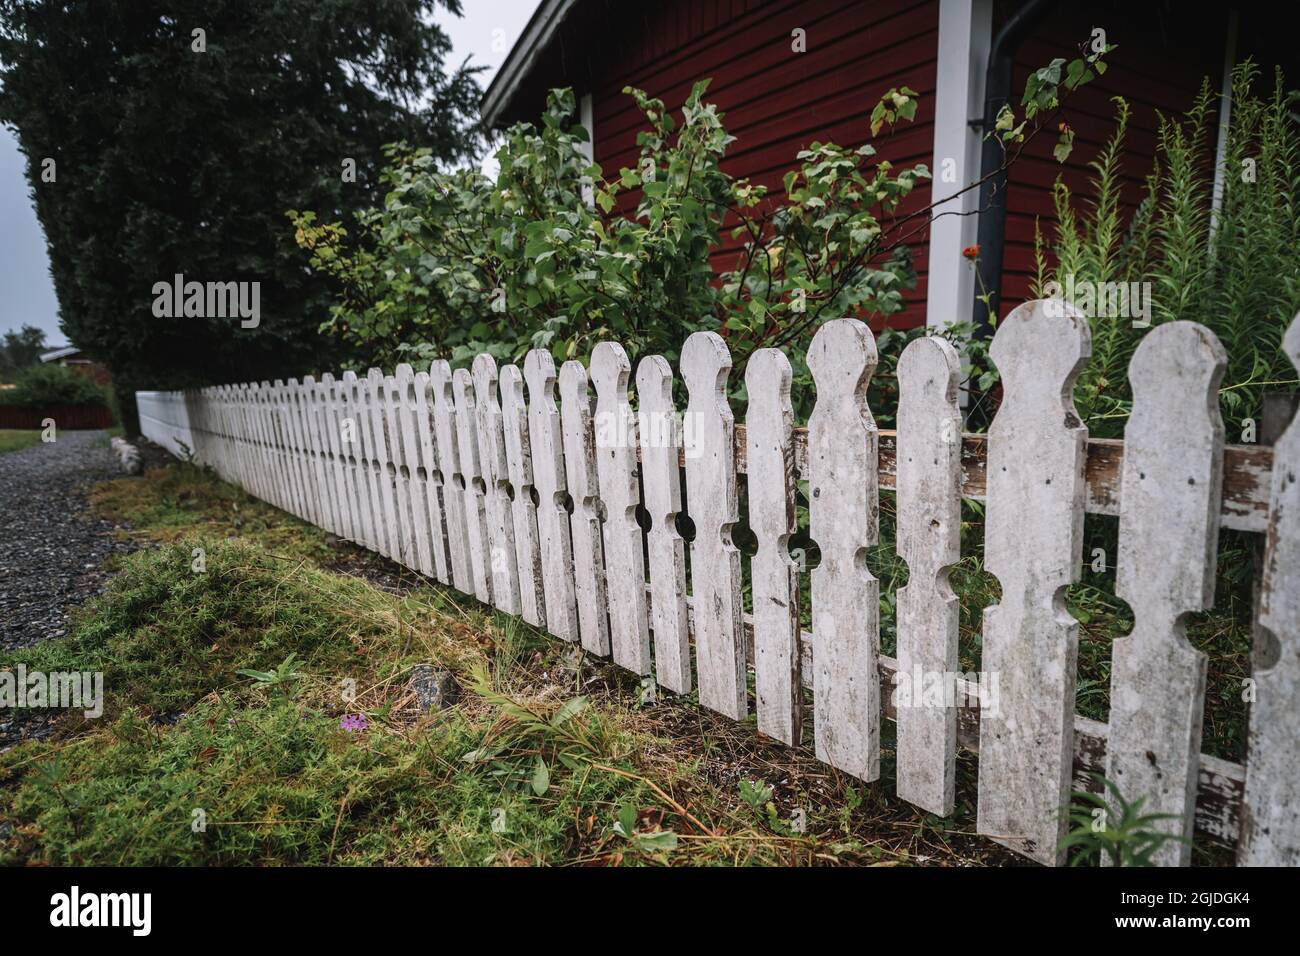 STOCKHOLM 20200730 Une clôture blanche entourant un jardin et un chalet rouge à Stockholm, en Suède. Photo: Stina Stjernkvist / TT / code 11610 Banque D'Images